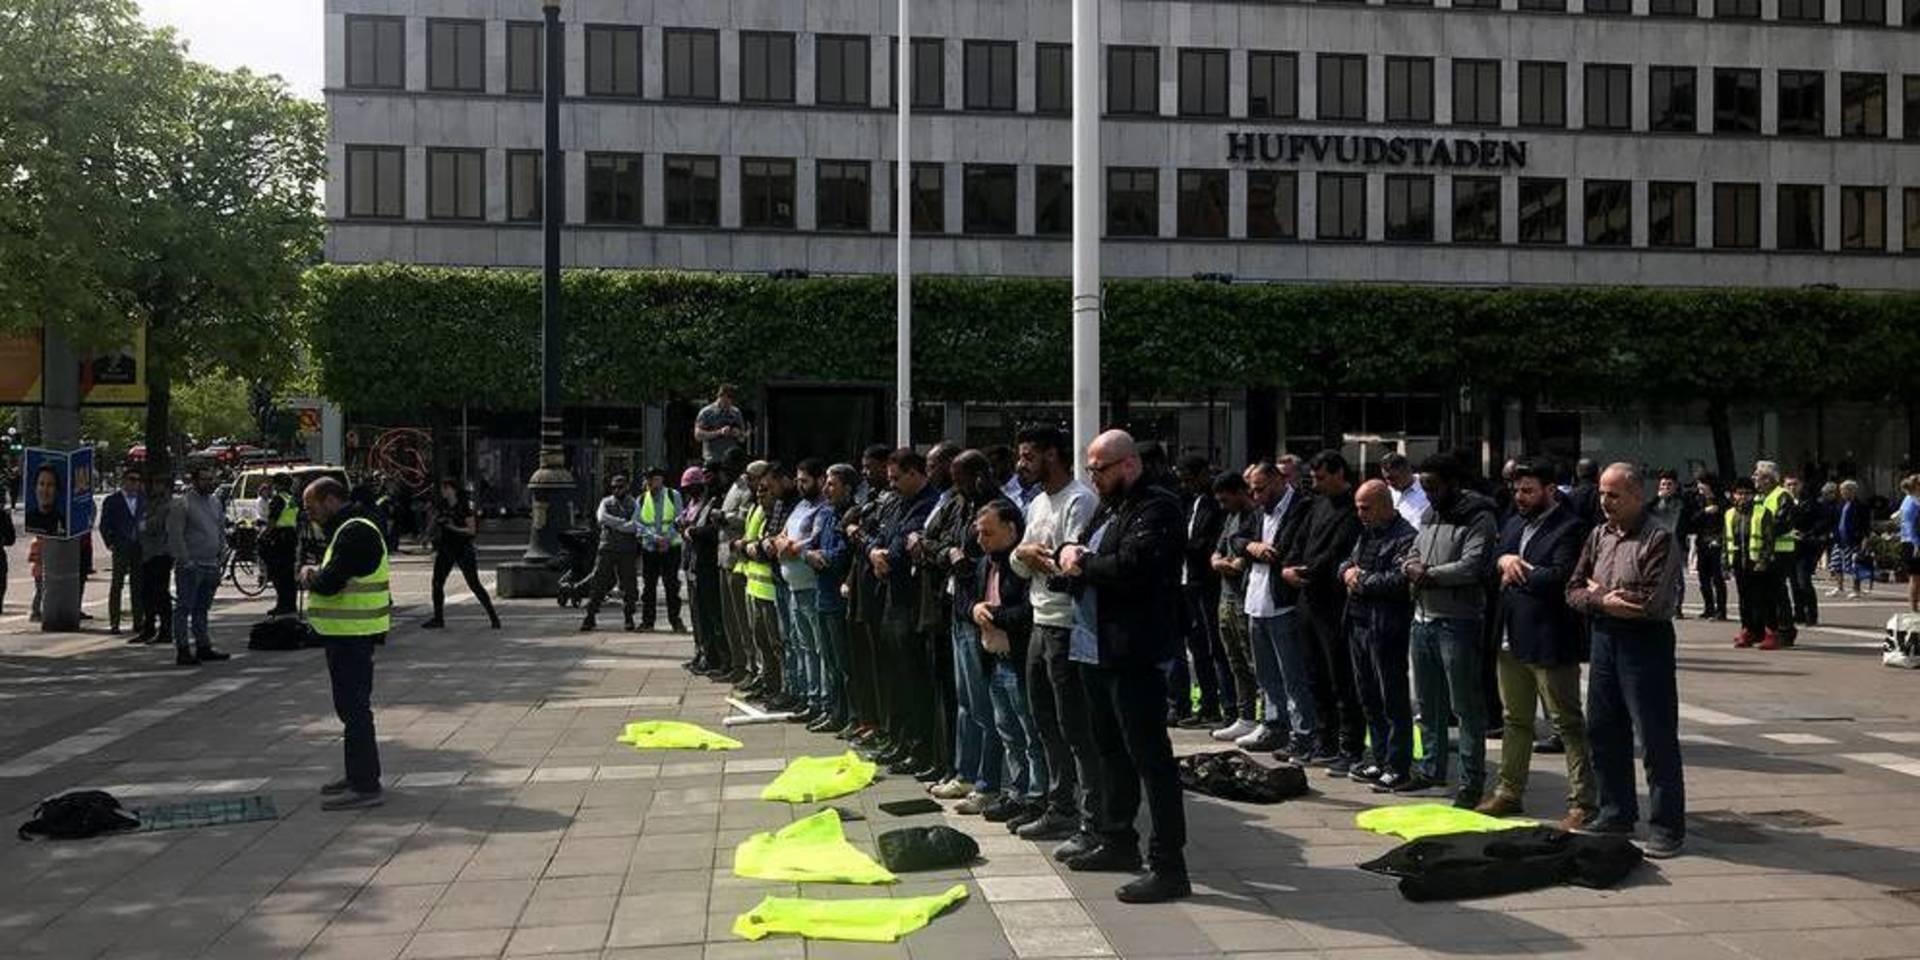 Demonstration på Norrmalmstorg, Stockholm, under lördagen till stöd för de gripna muslimska ledarna. Bild: Rebecca Randhawa / SVT